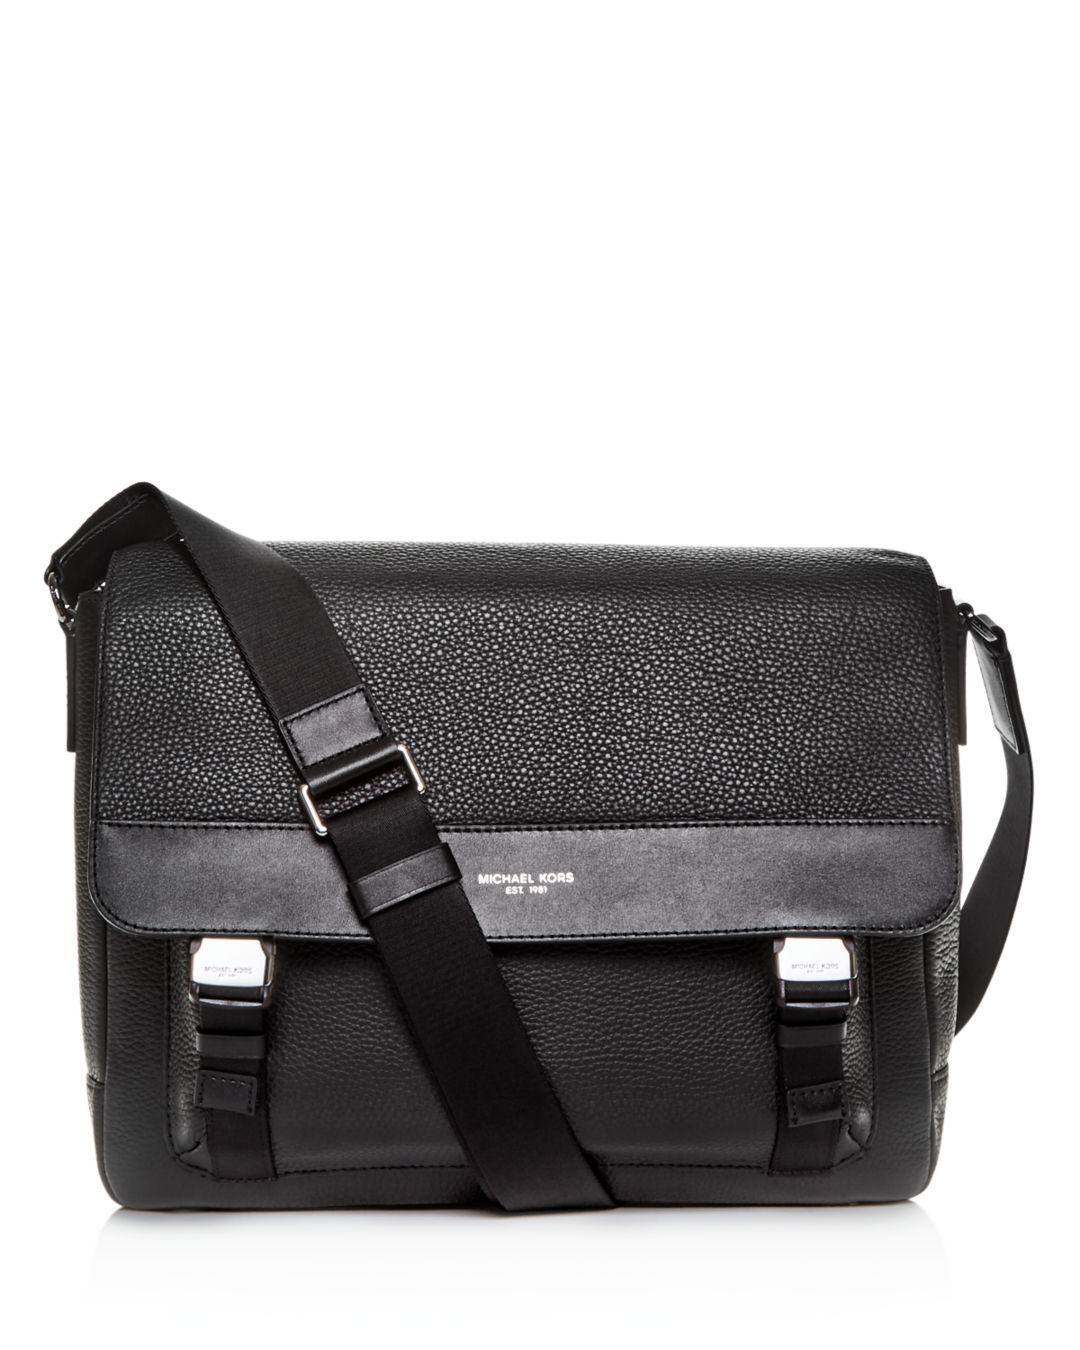 Michael Kors Greyson Pebbled Leather Messenger Bag in Black for Men - Save 13% - Lyst